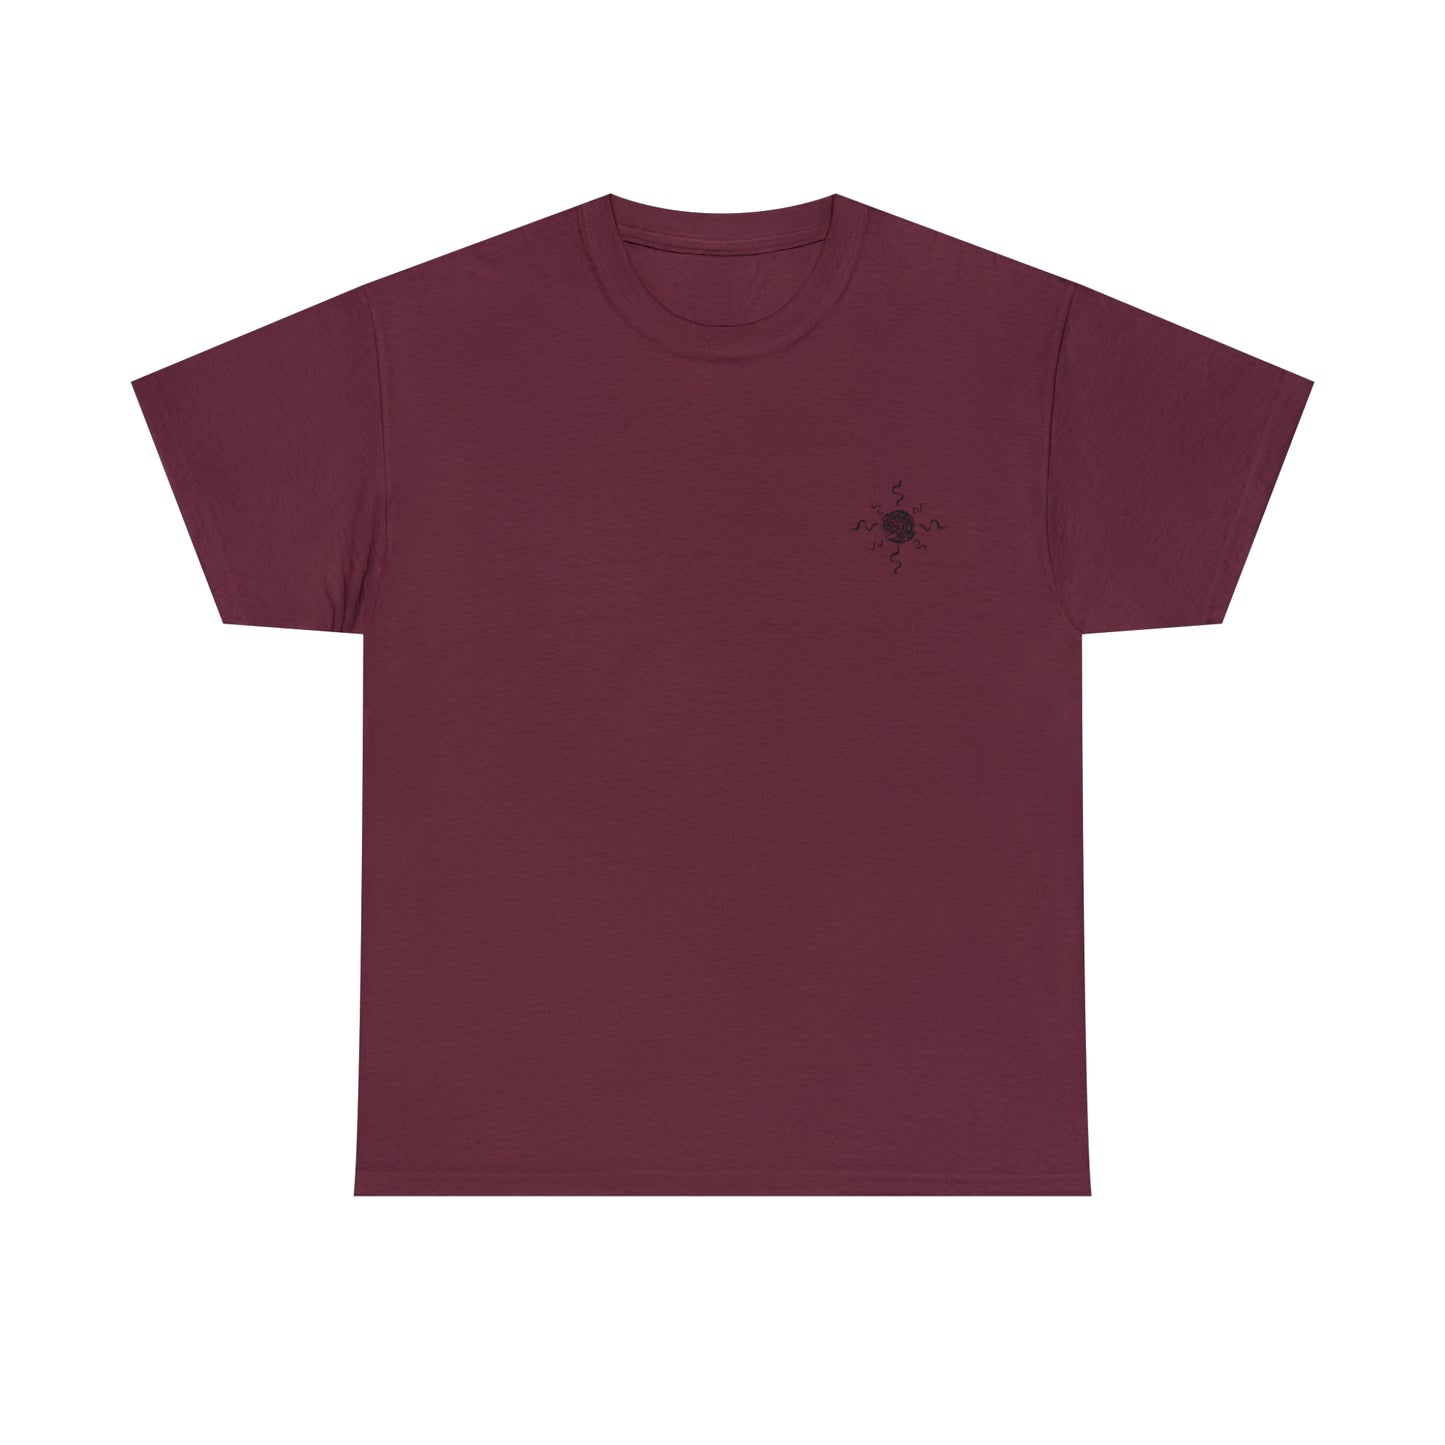 Sun Butterfly ~ Unisex 100% Cotton T-Shirt